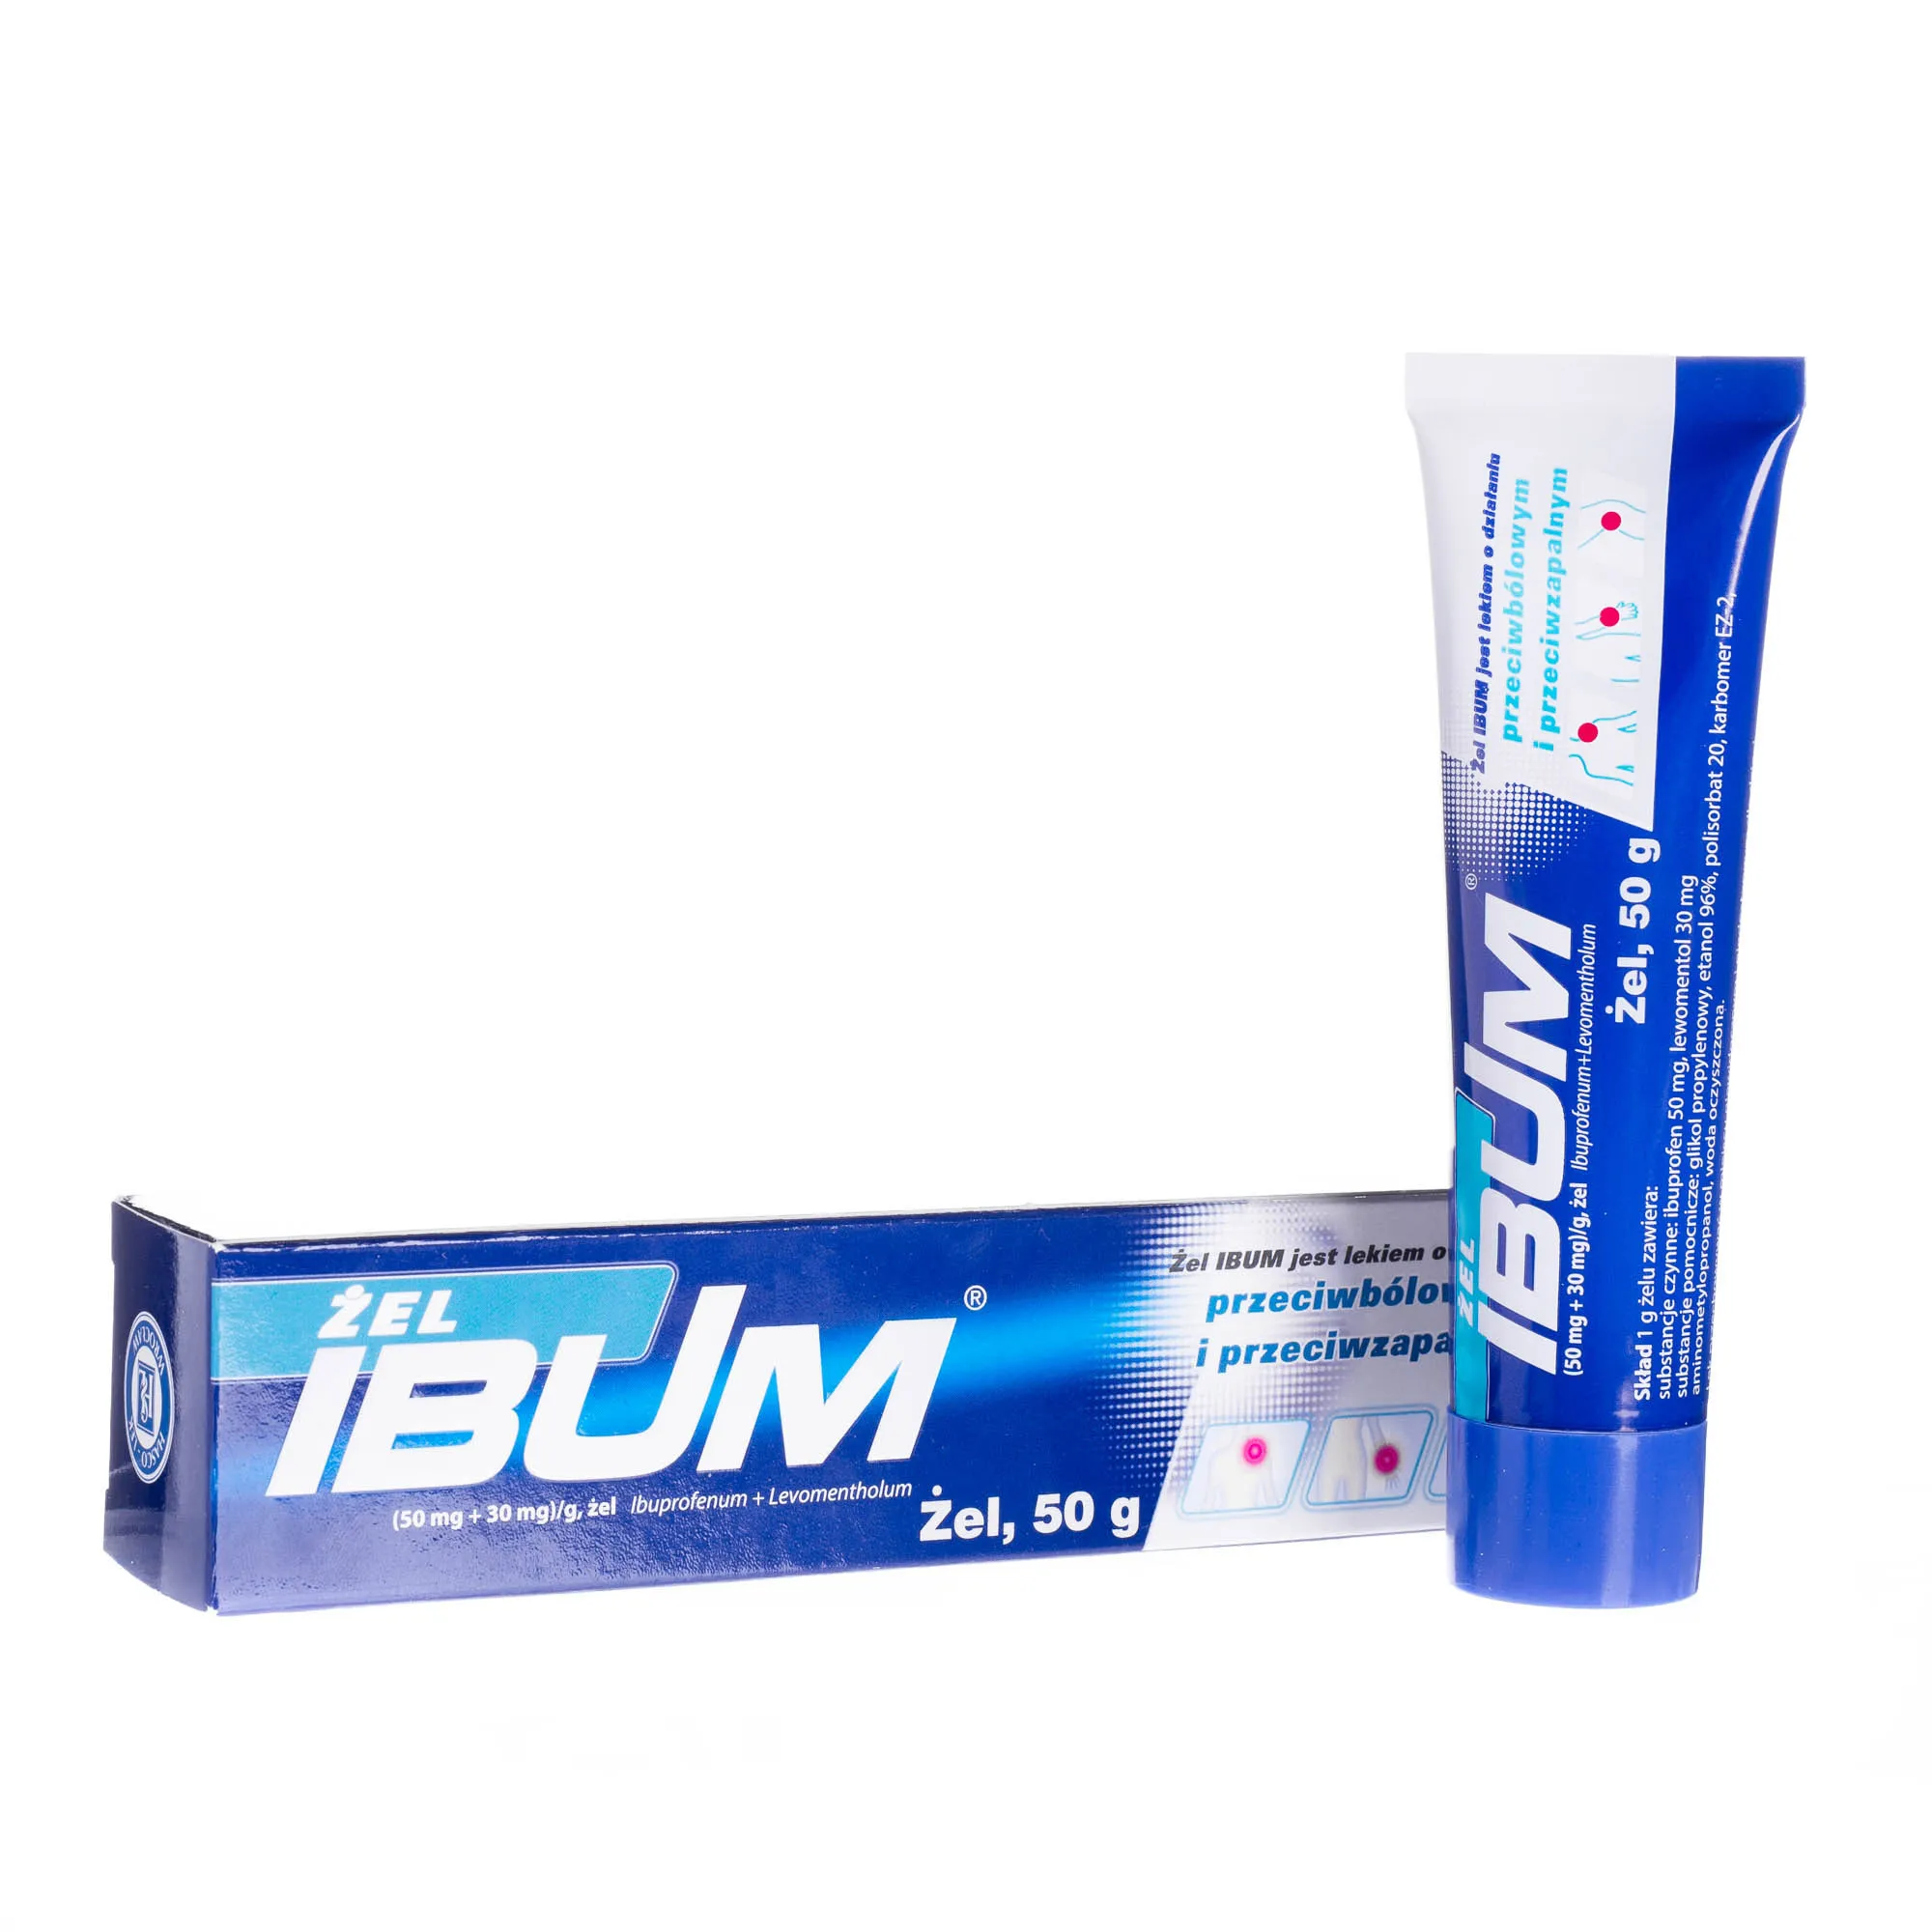 Ibum - żel przeciwbólowy i przeciwzapalny, 50 g 